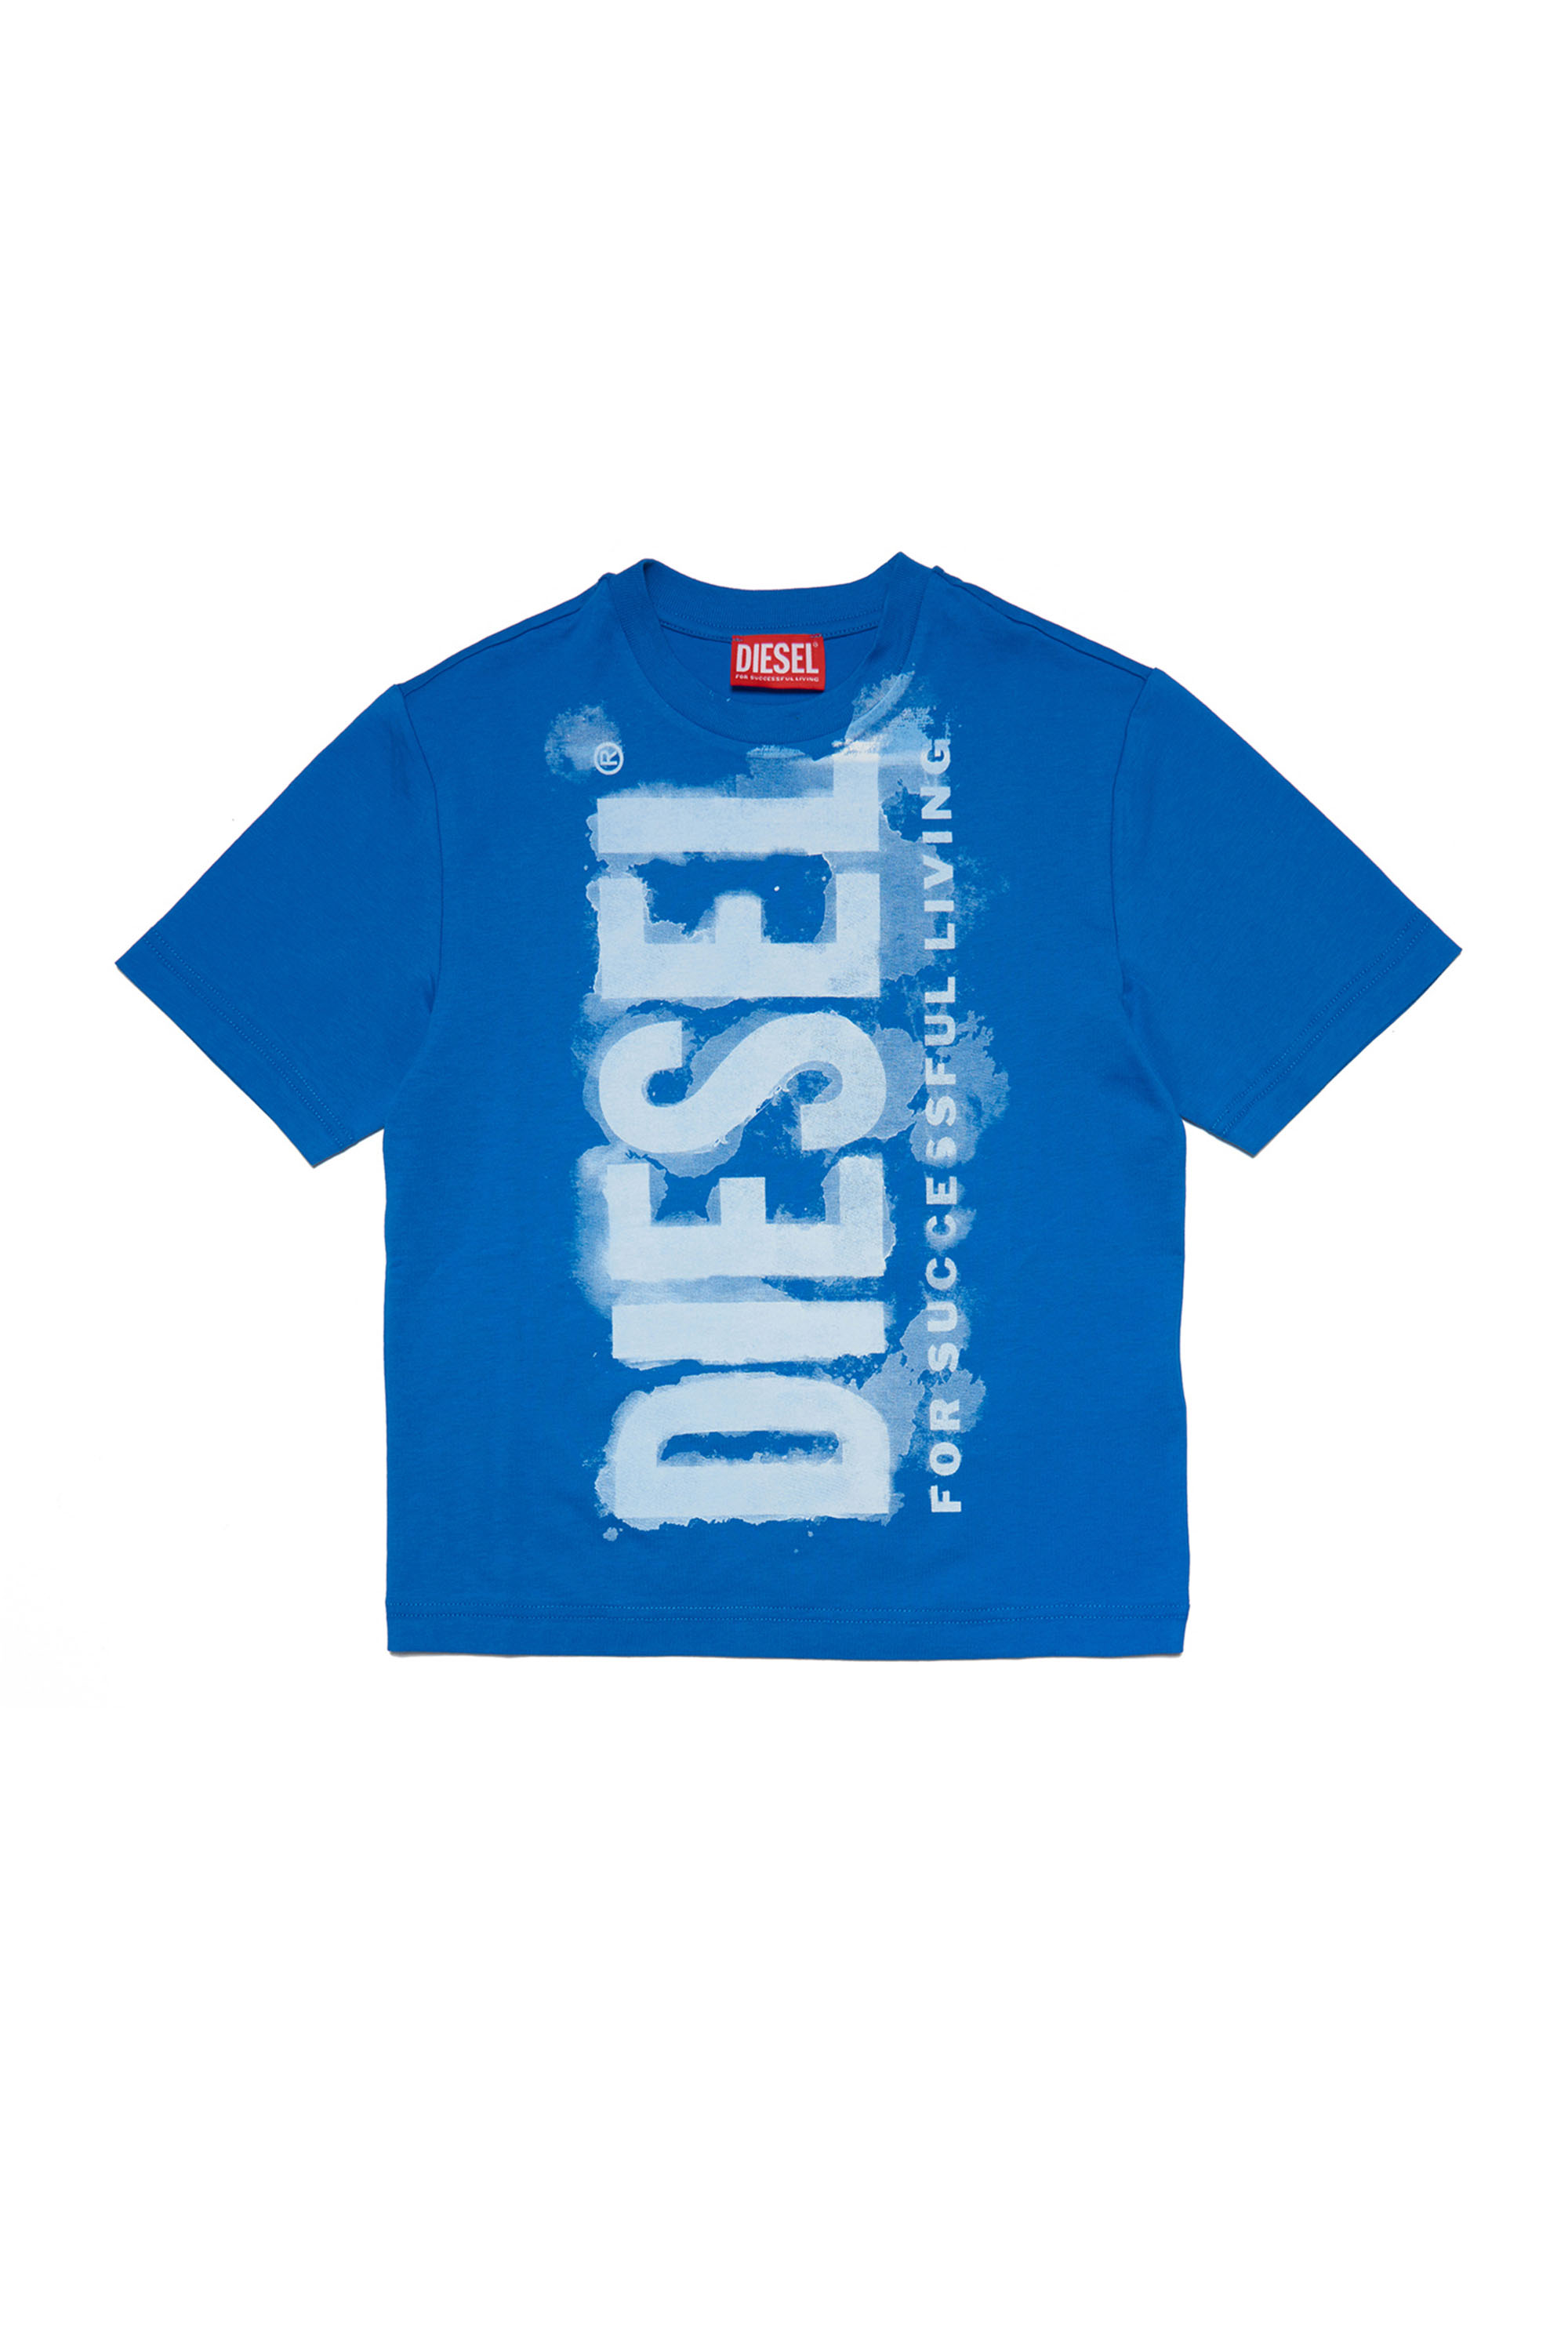 Diesel - TJUSTE16 OVER, Blue - Image 1